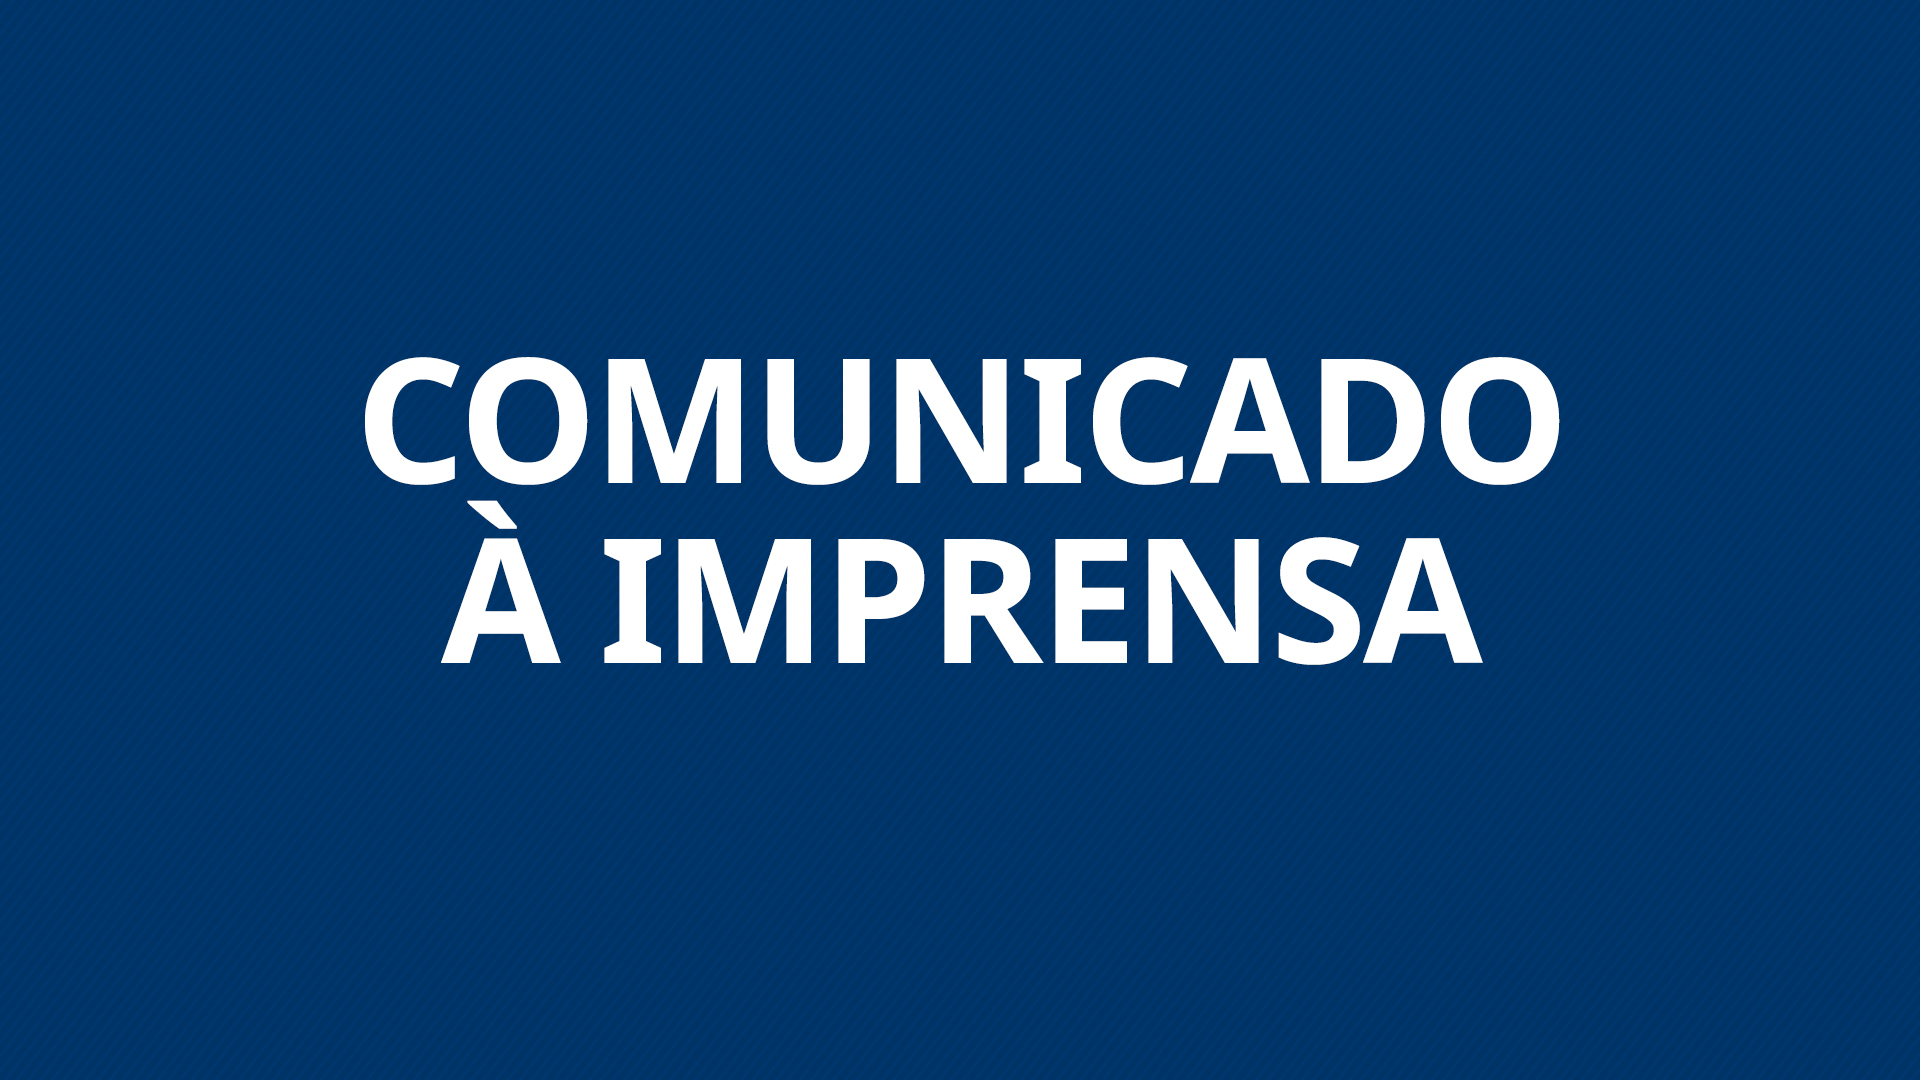 Comunicado à imprensa - Ataque no Colégio Adventista de Manaus (IAM)